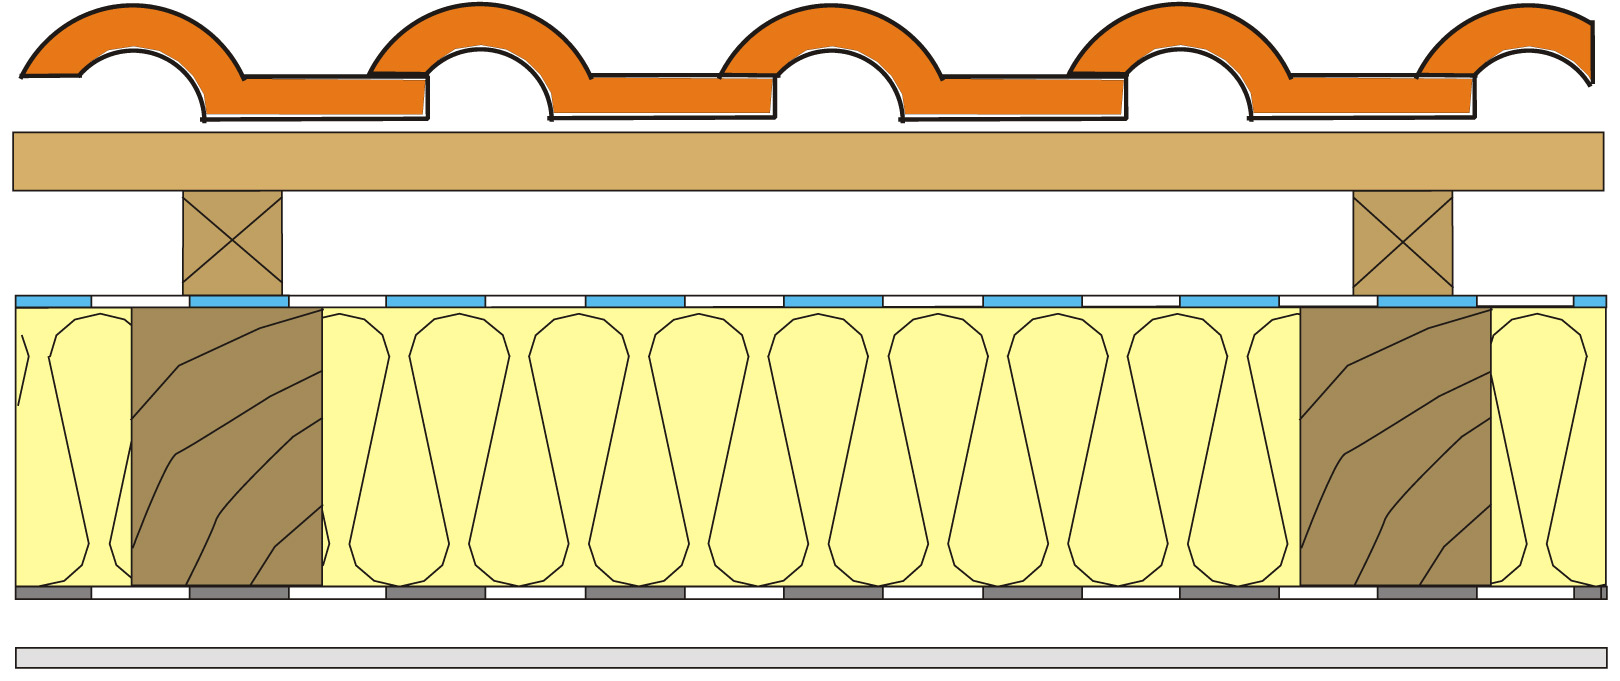 Obr. 6 Skladba dvojplášťovej šikmej strechy Tepelná izolácia z čadiča alebo sklenej vaty je vložená medzi krokvami na ich celú výšku. Na interiérovej strane je umiestnená parozábrana ľahkého typu z PE vystuženého mriežkou. Na tepelnej izolácii alebo na debnení je uložená poistná hydroizolácia s veľmi malým difúznym odporom a odolnosťou proti UV žiareniu.